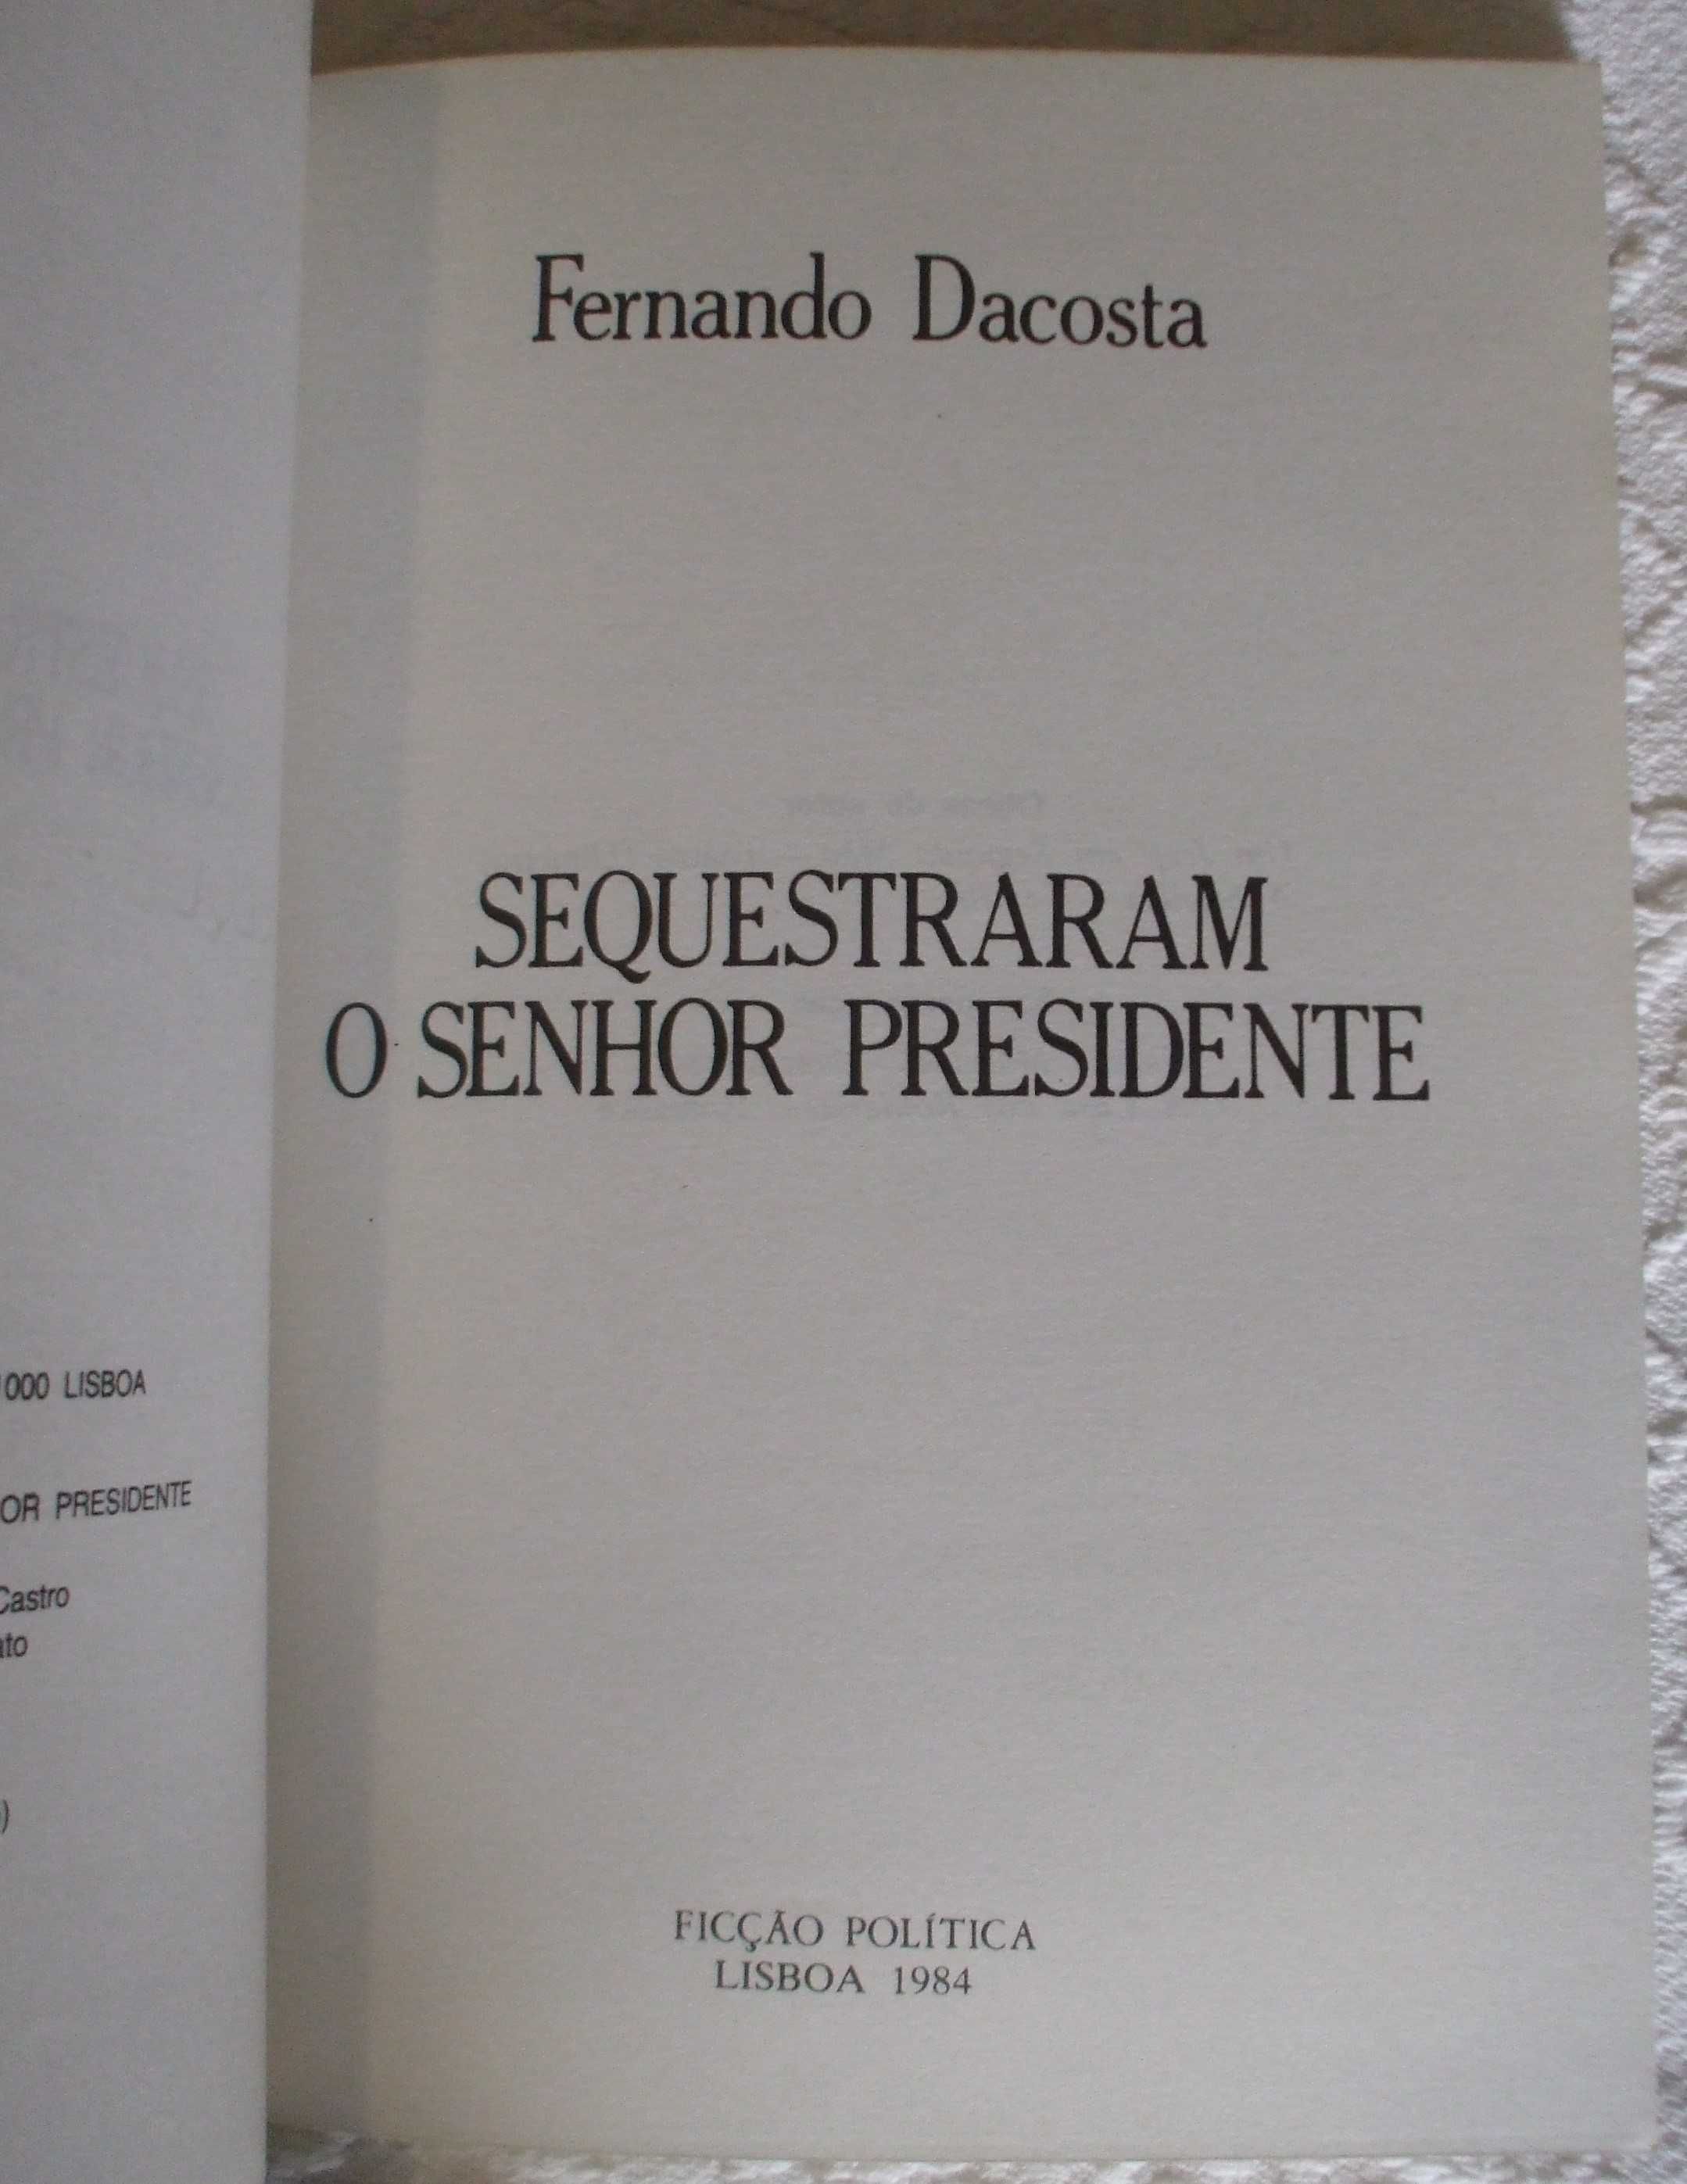 Sequestraram o Senhor Presidente, Fernando Dacosta